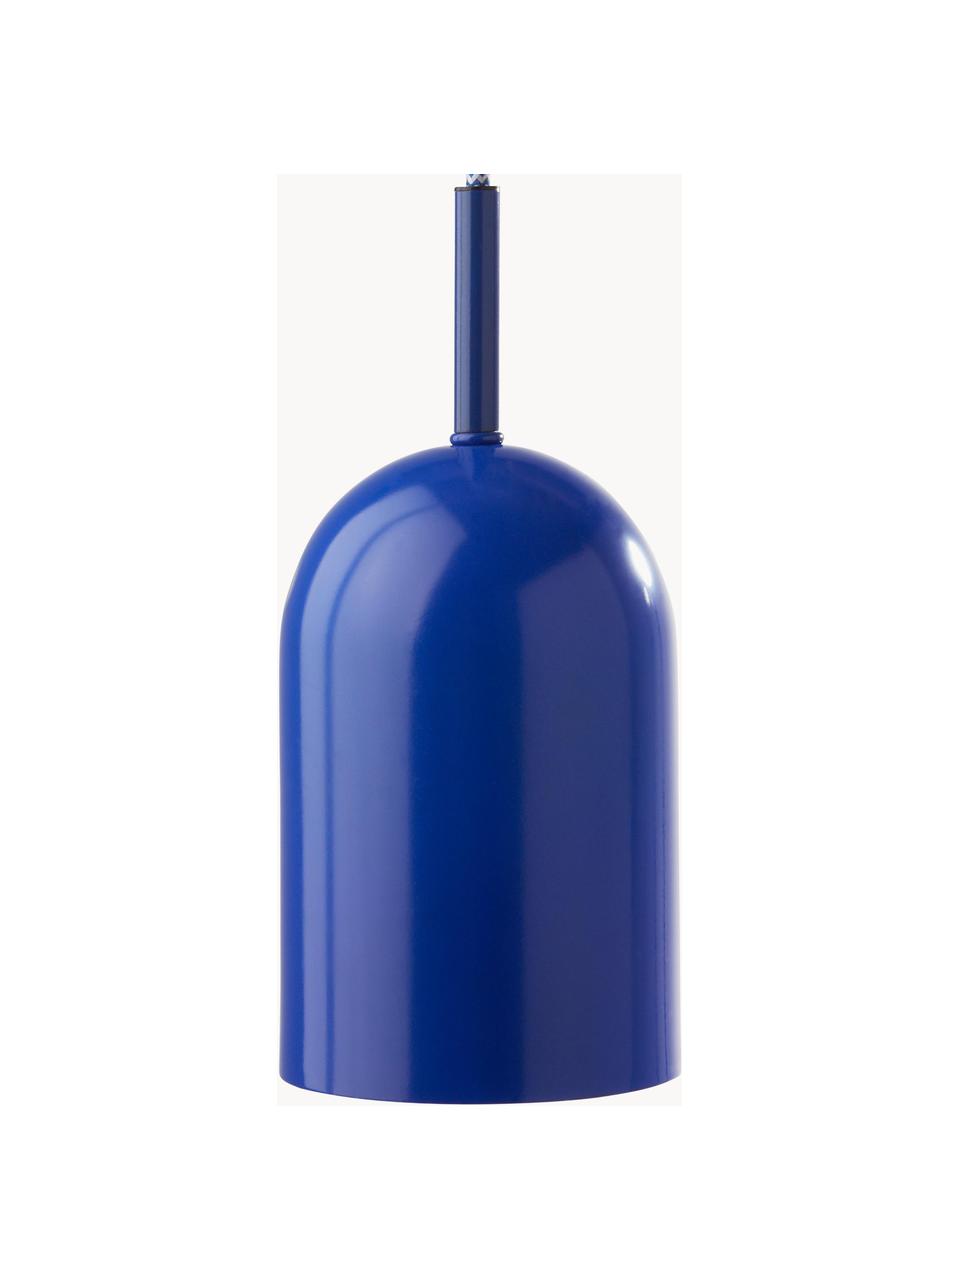 Lampada a sospensione piccola Ara, Blu royal, Ø 10 x Alt. 15 cm